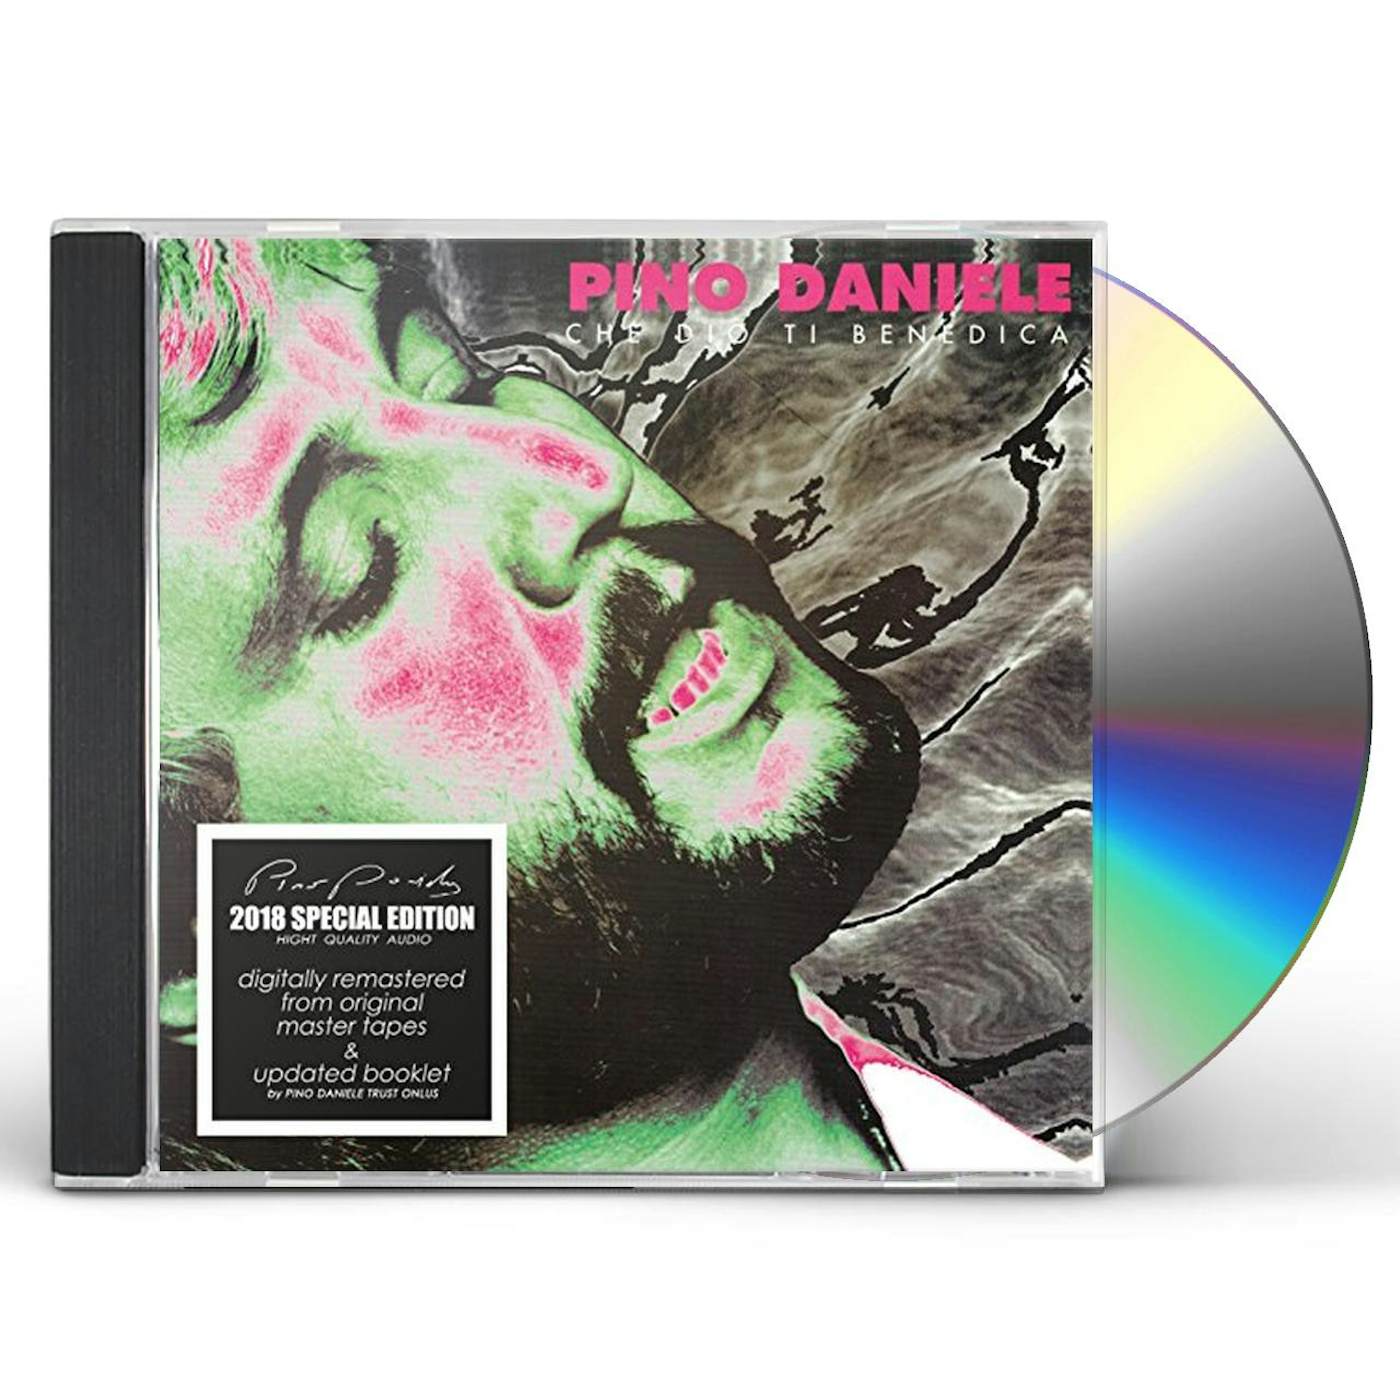 Pino Daniele CHE DIO TI BENEDICA CD